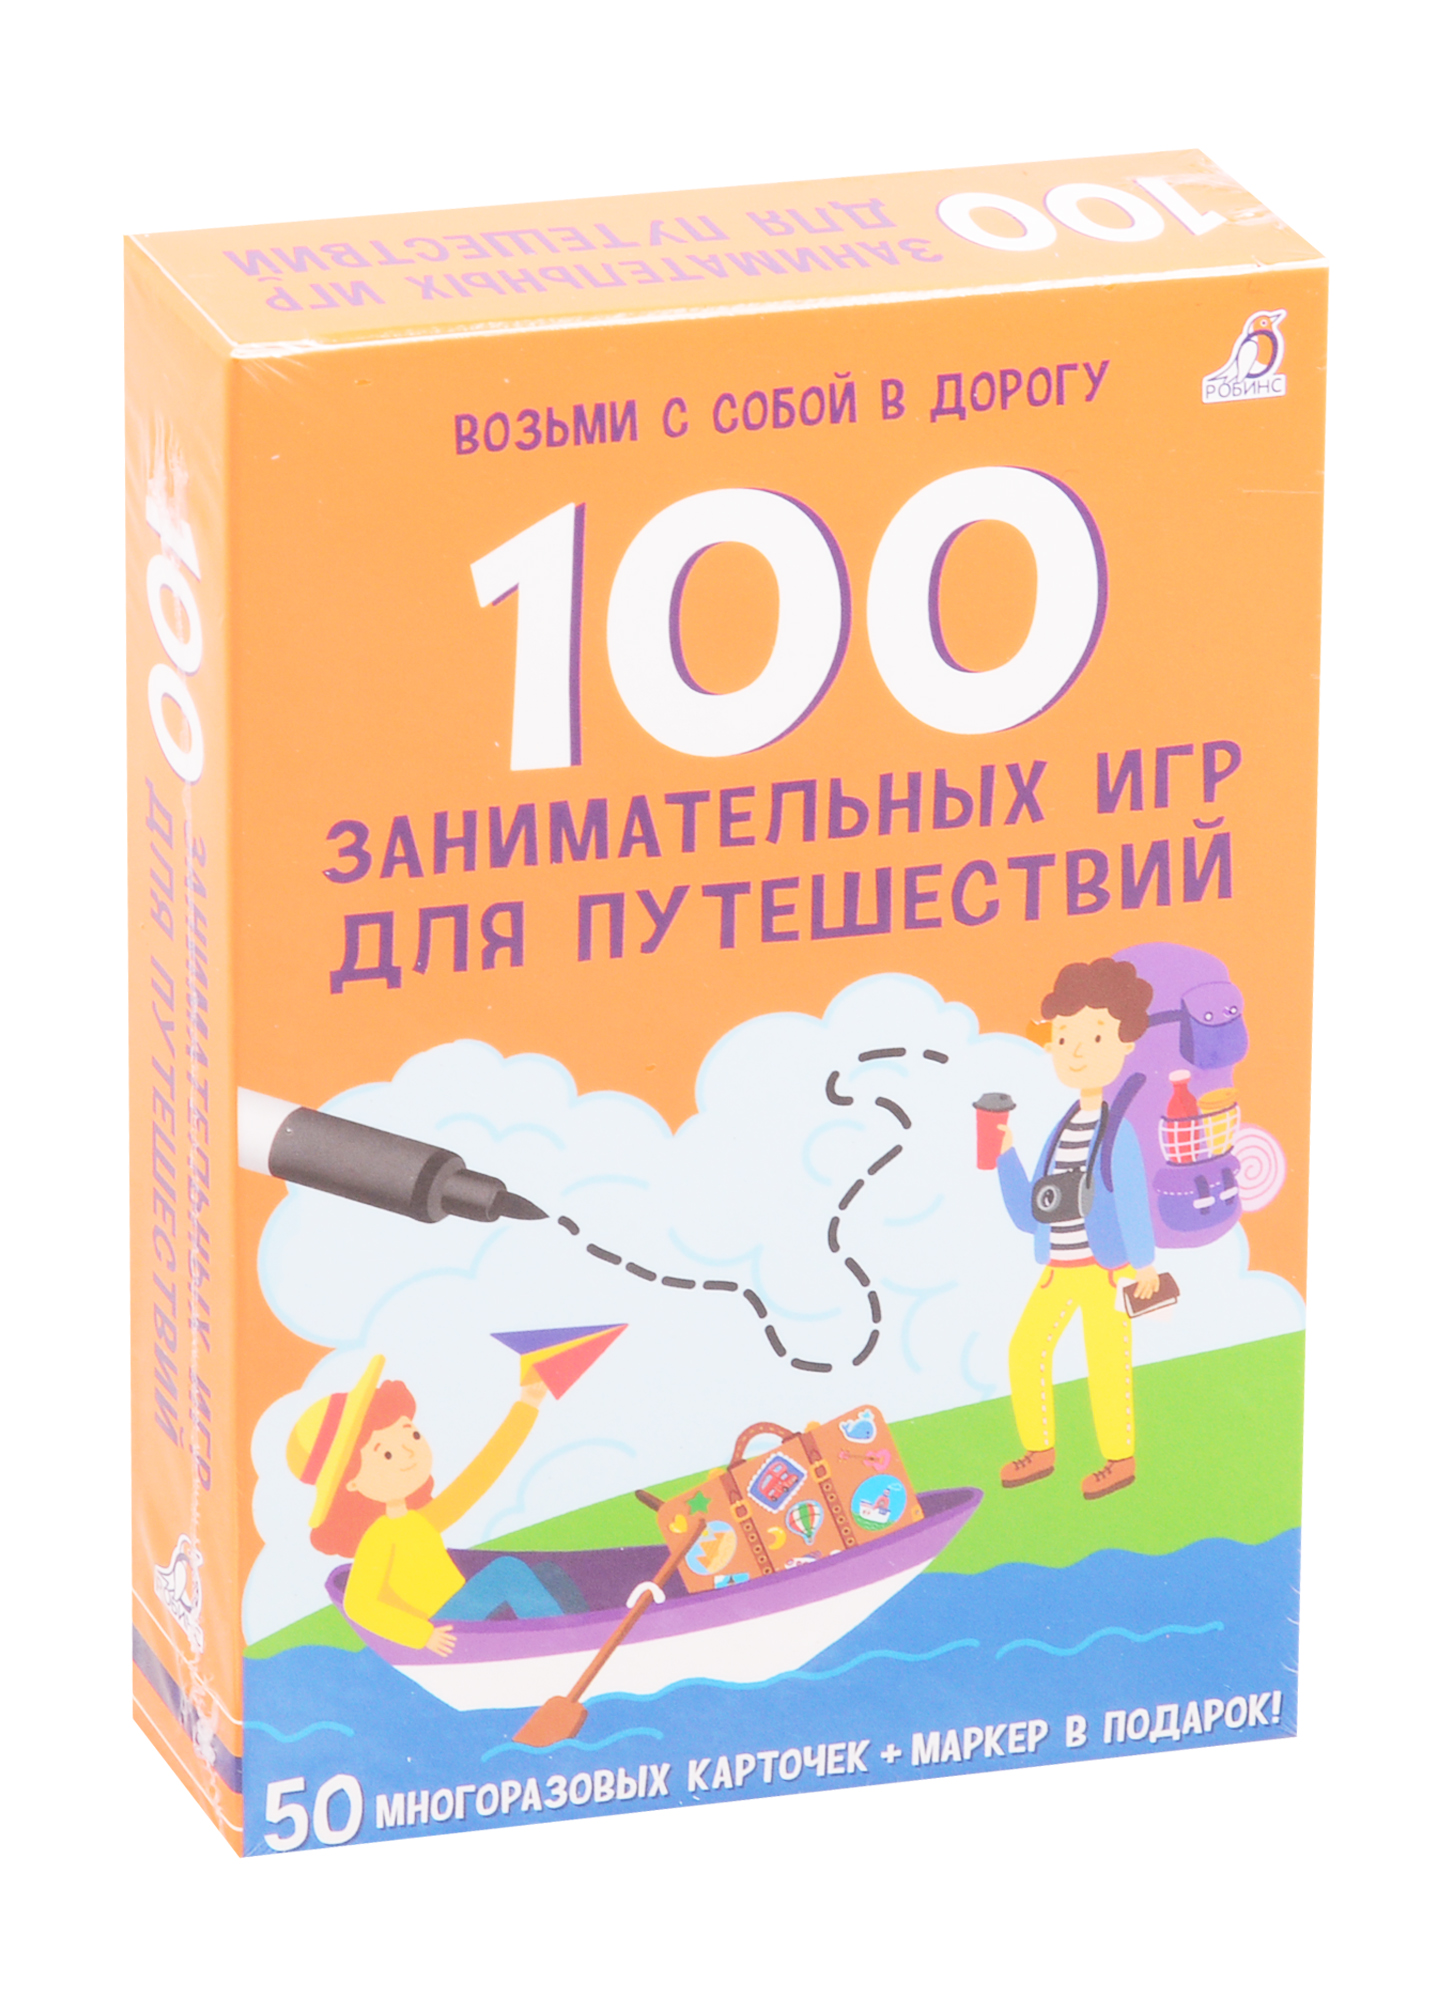 Асборн - карточки. 100 занимательных игр для путешествий раннее развитие робинс асборн карточки 100 увлекательных игр для путешествий